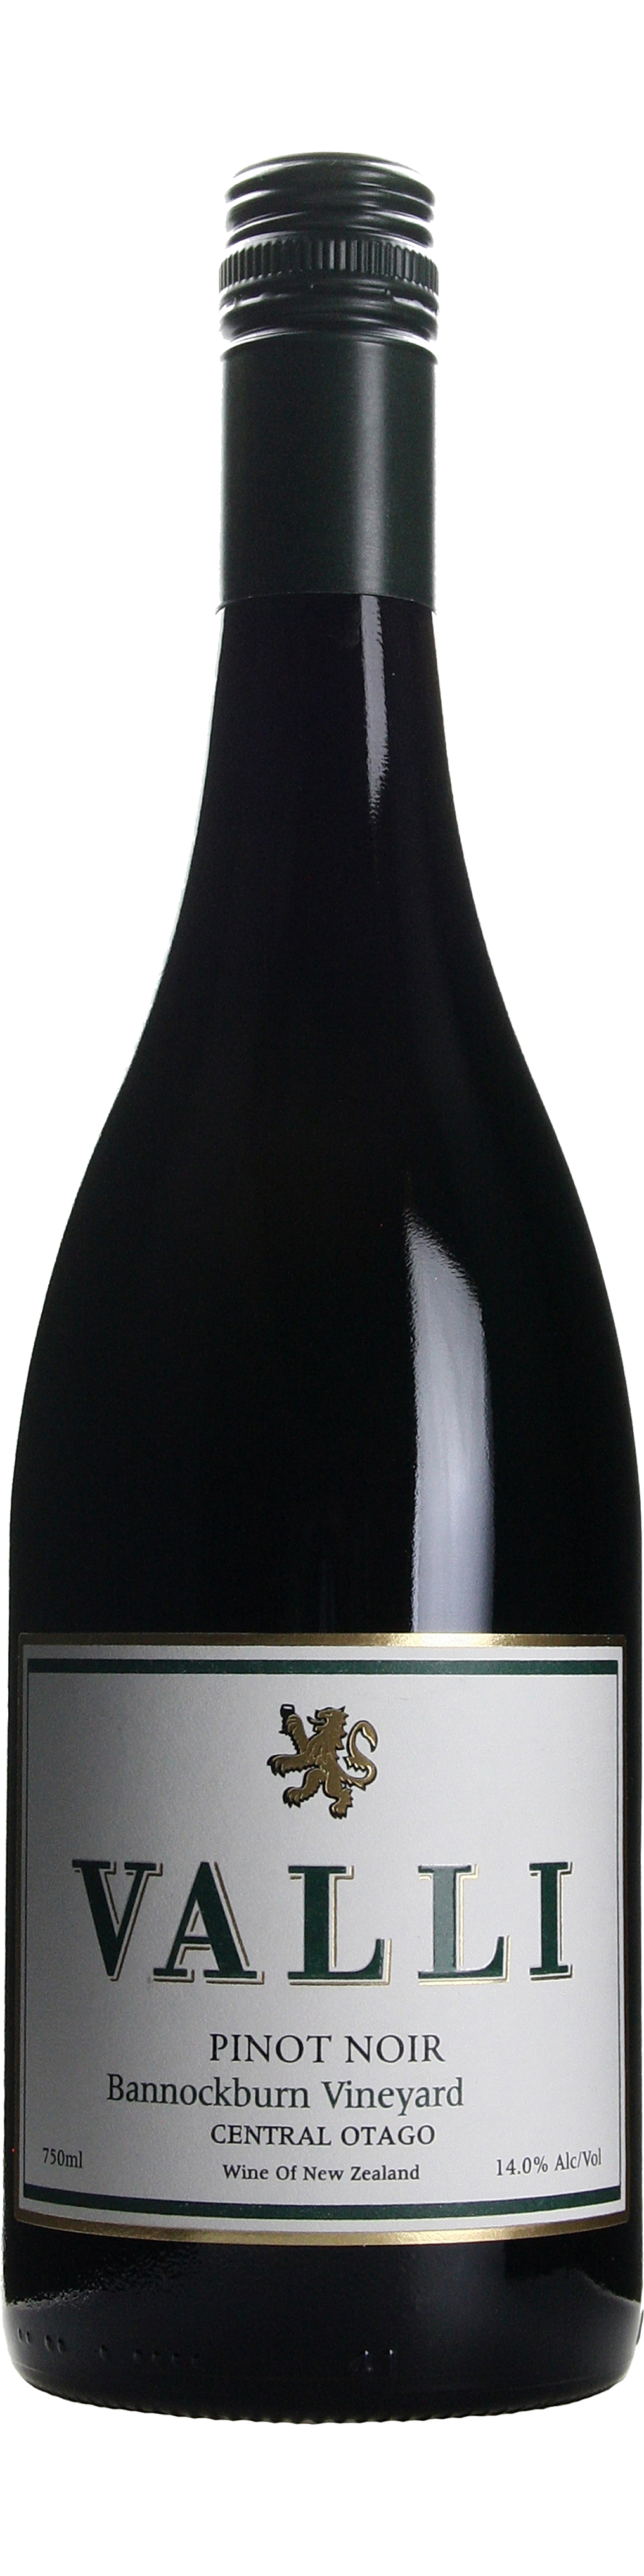 Bottle shot of 2011 Bannockburn Pinot Noir